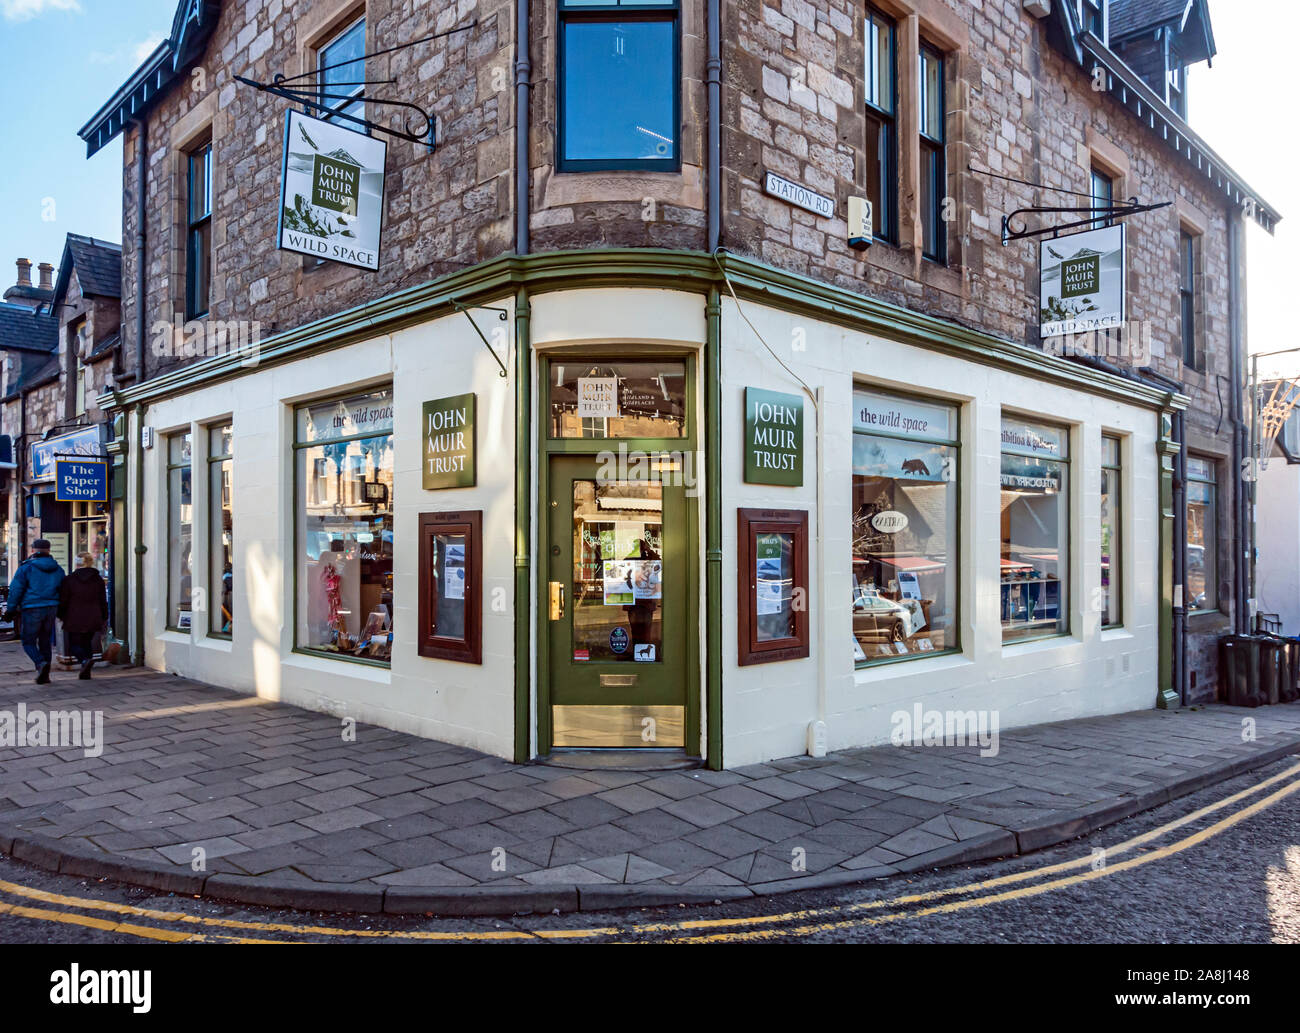 John Muir Trust wilde Raum Ausstellung und Shop Atholl Road, Pitlochry, Perth und Kinross Schottland Großbritannien Stockfoto